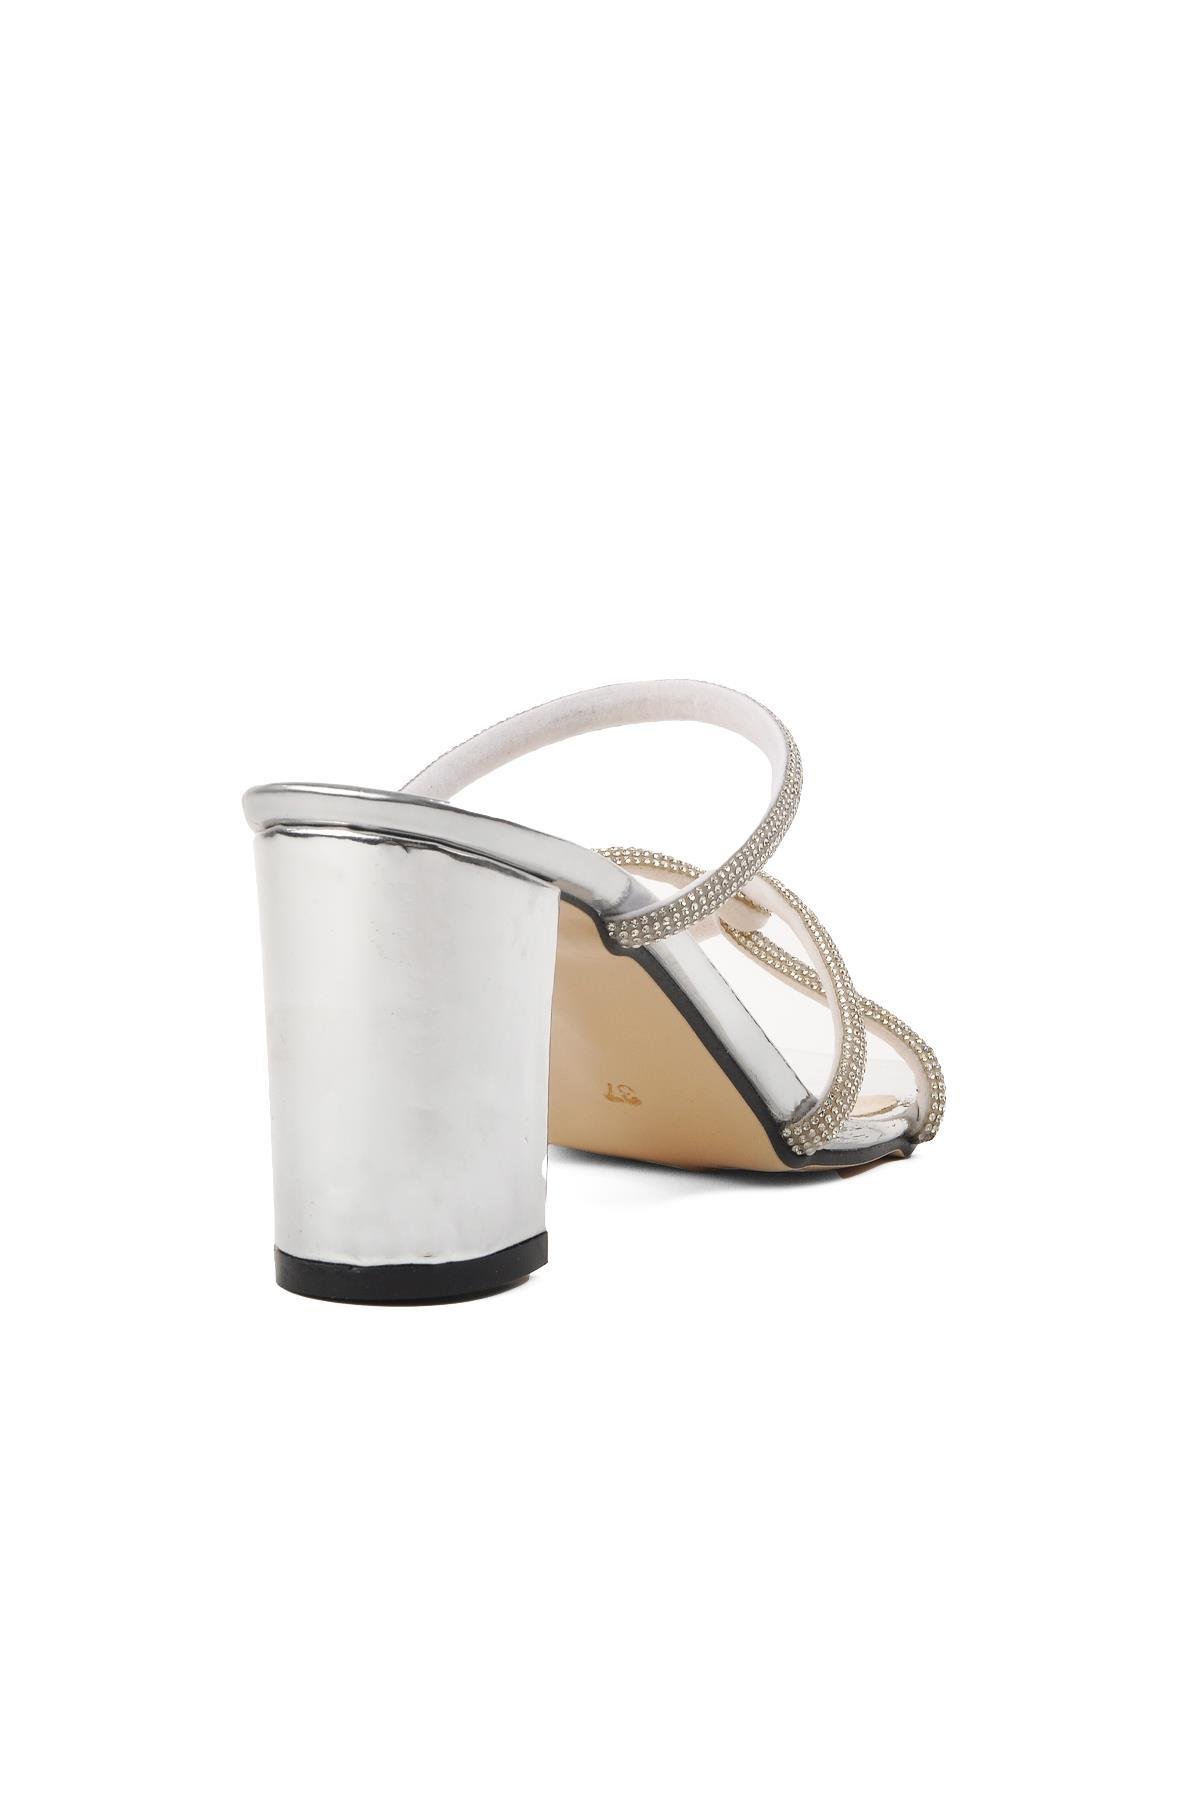 Pierre Cardin PC-52218 Gümüş Kadın Topuklu Terlik - Ayakmod